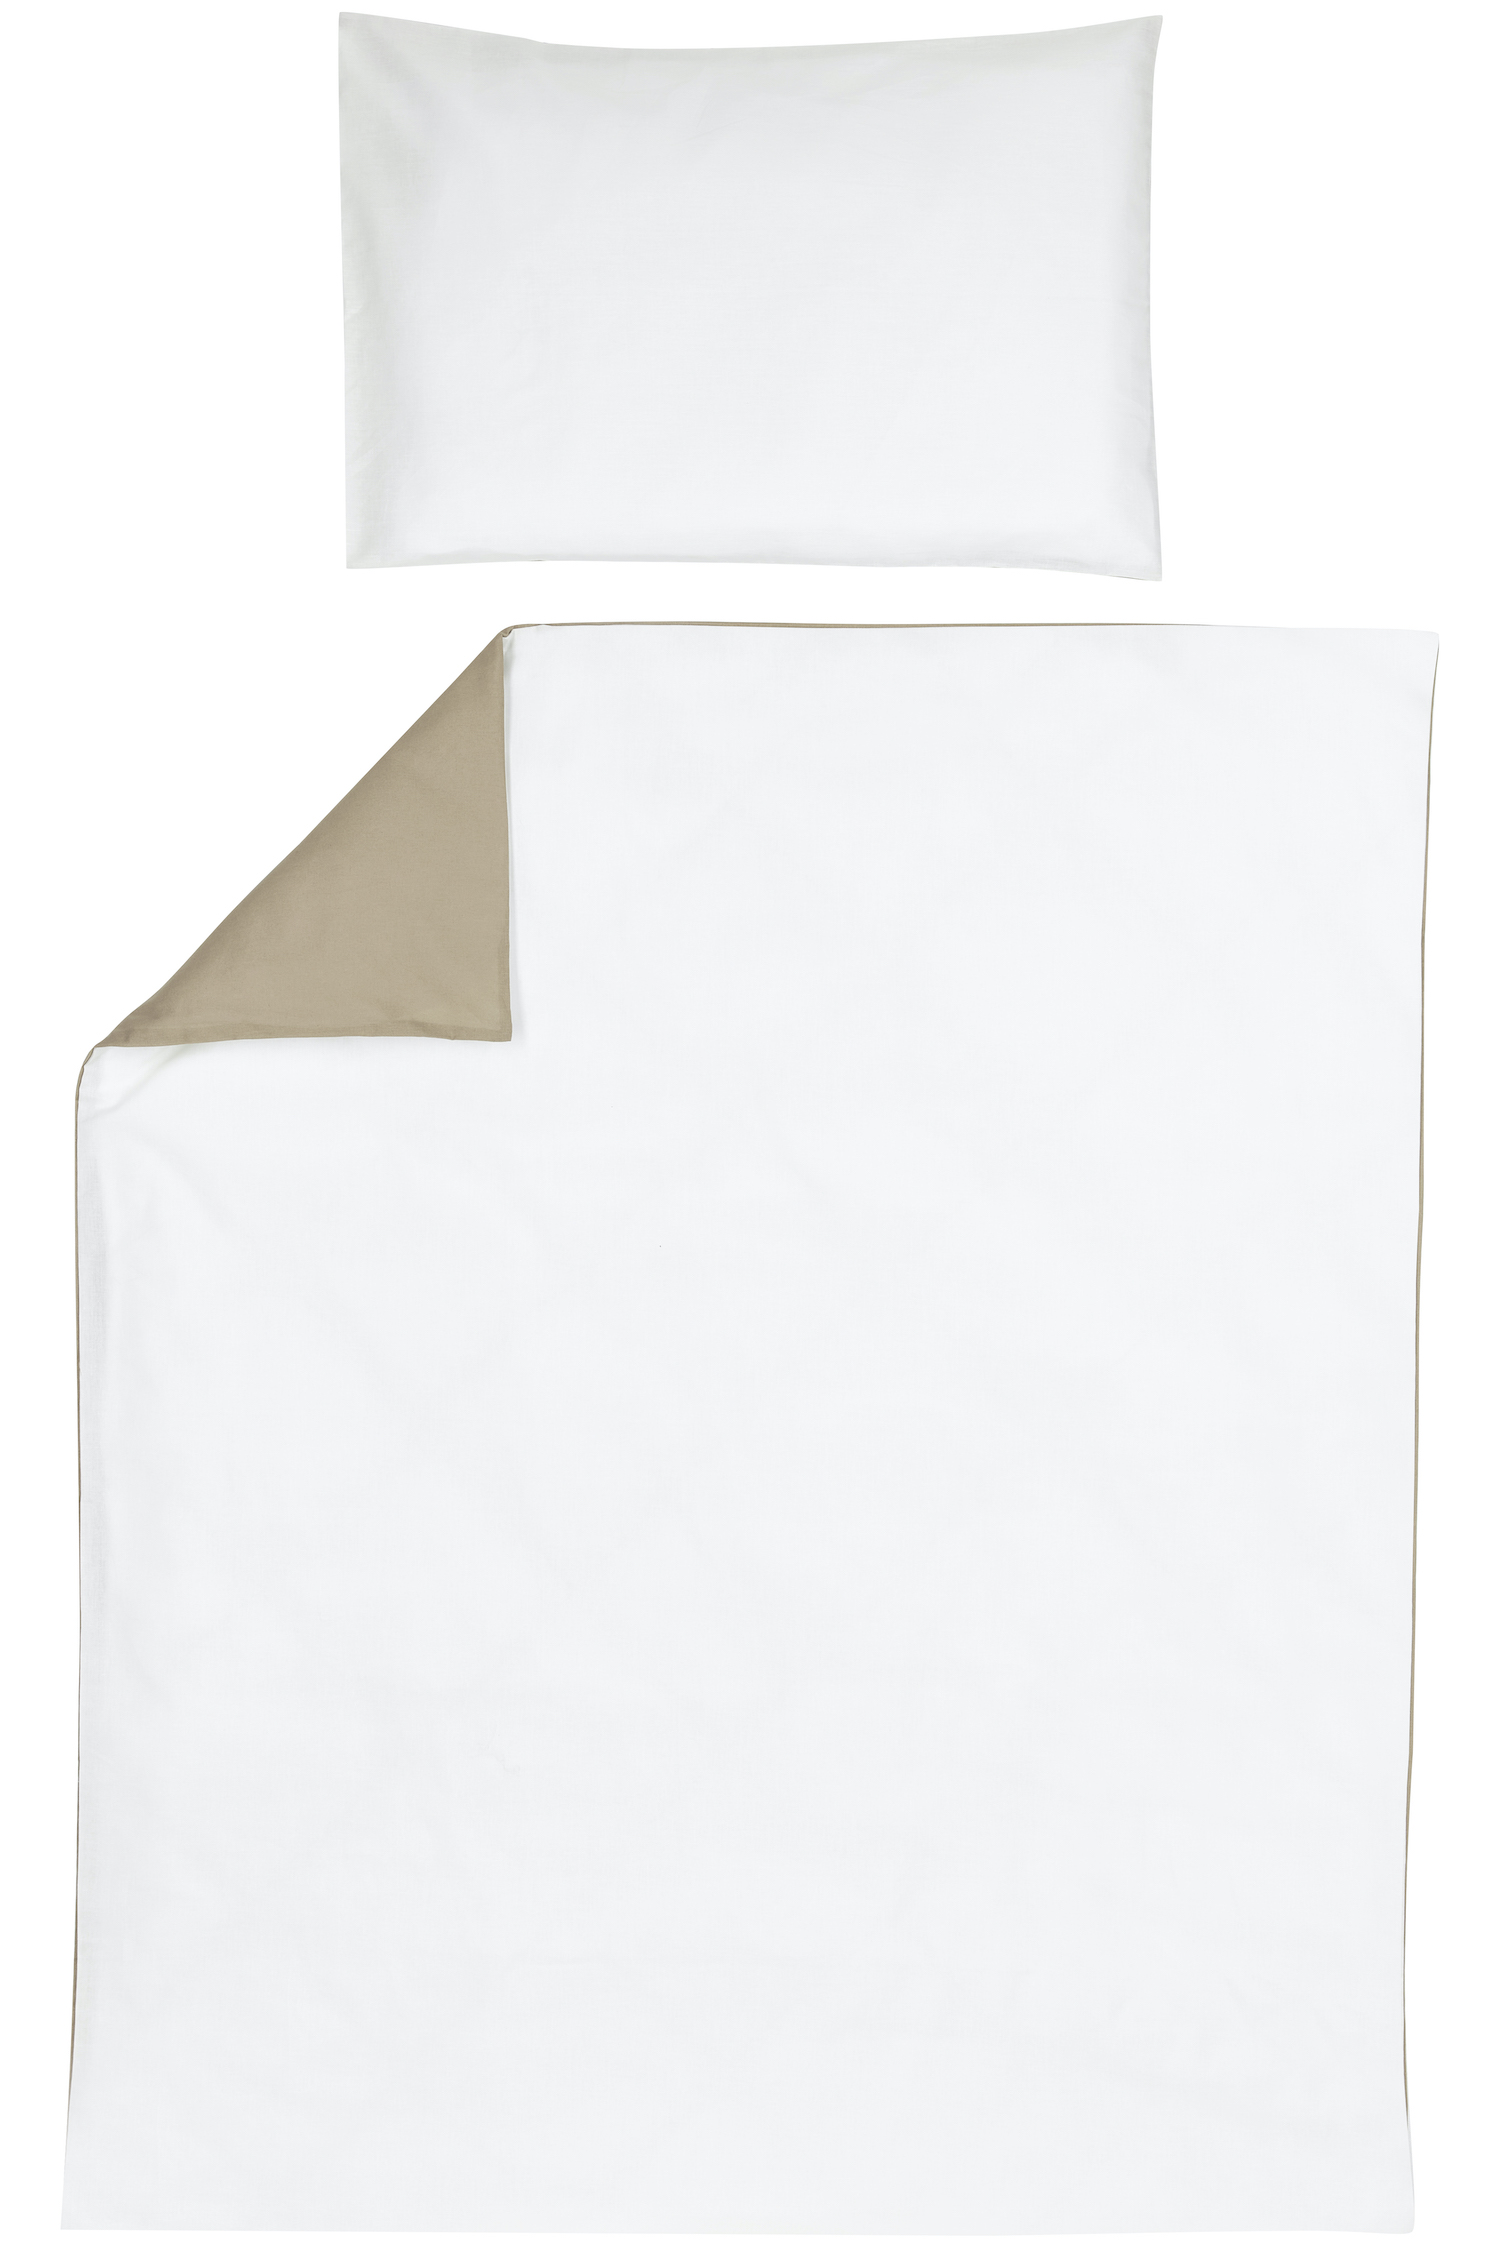 Duvet Cover + Pillowcase Uni - Taupe/Offwhite - 100X135cm